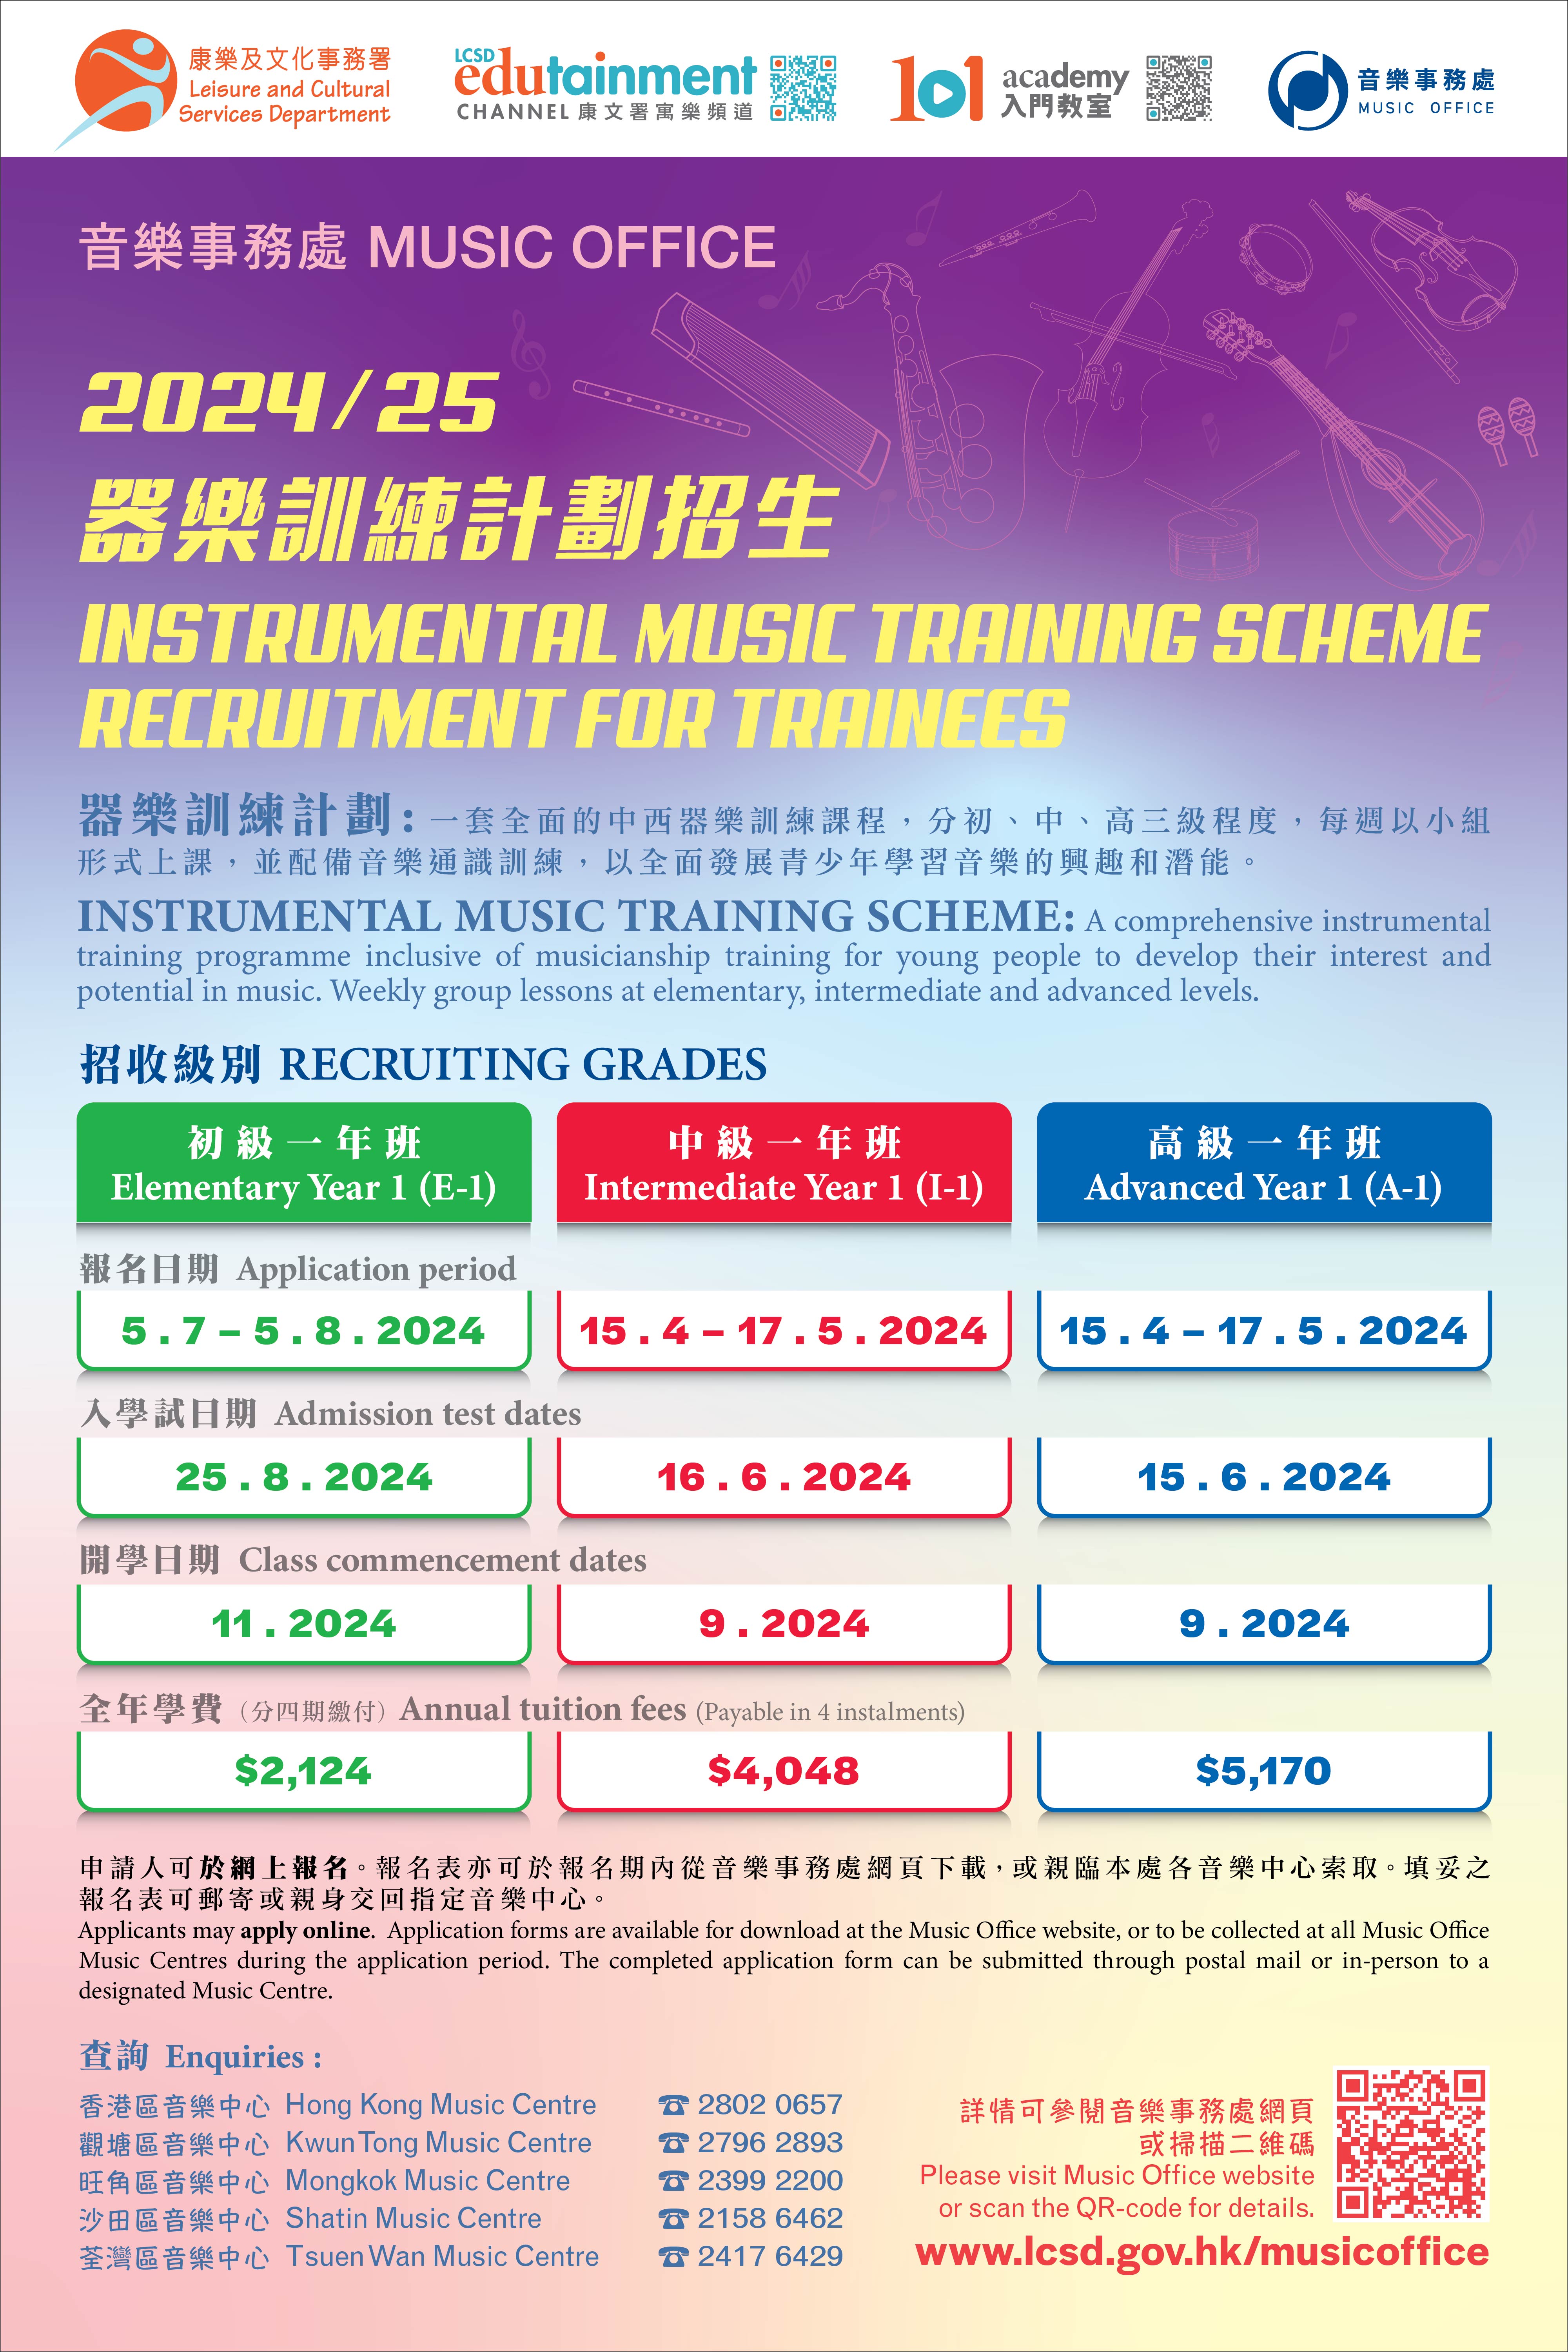 2024/25器樂訓練計劃中級一年班(I-1)及高級一年班(A-1)招生